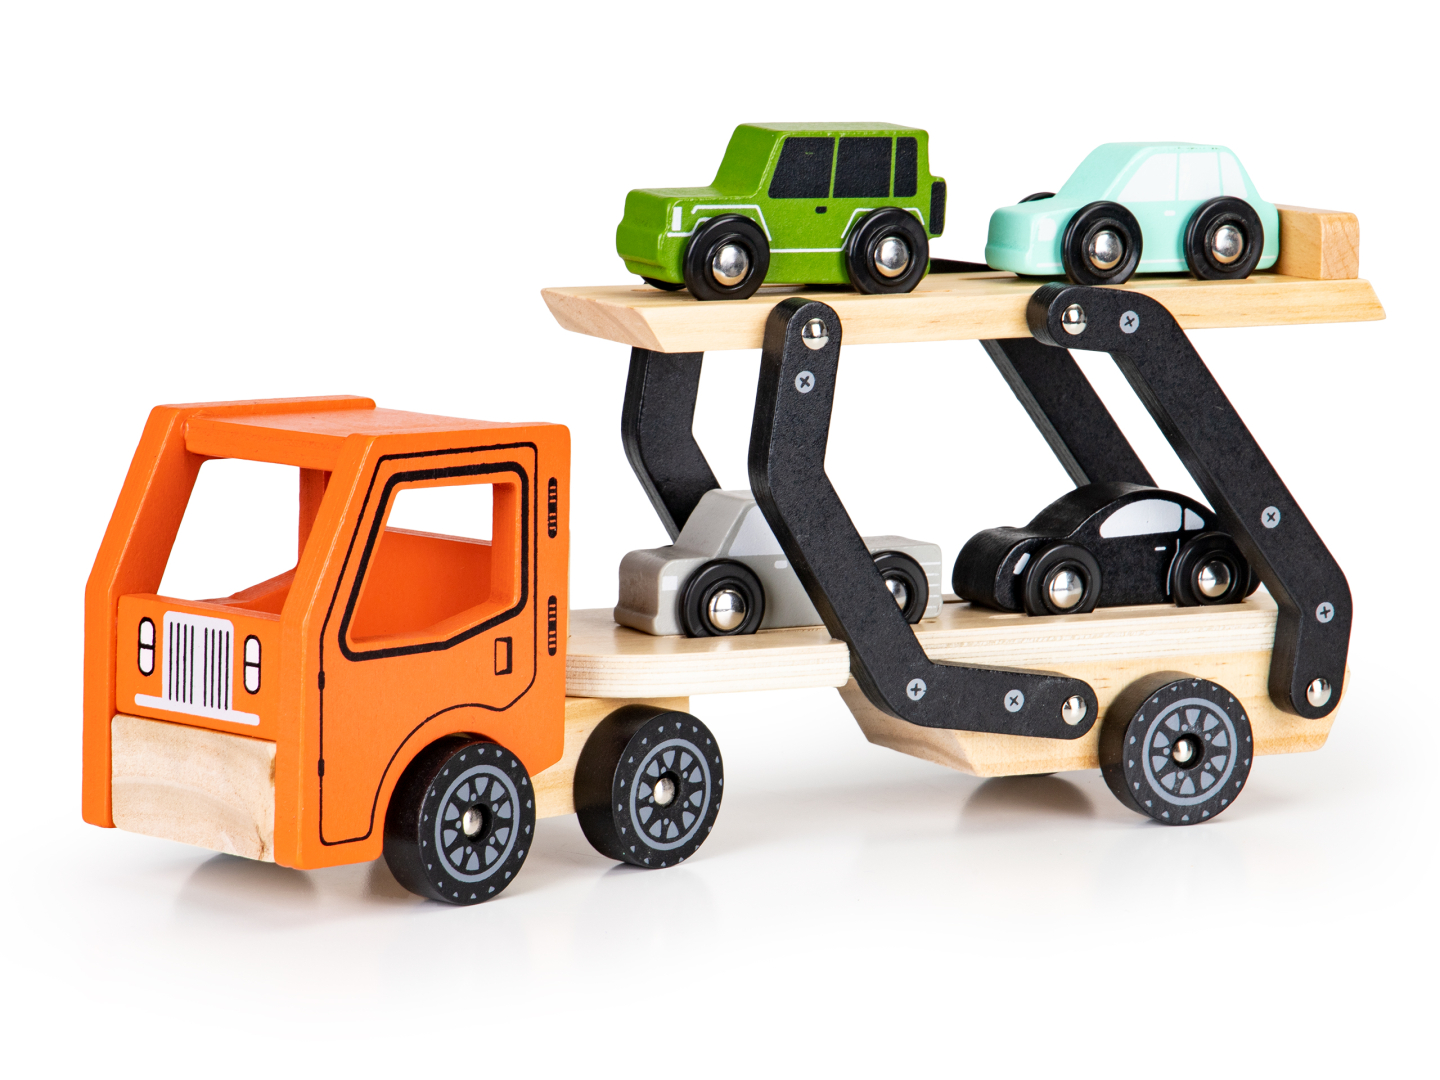 Set interactiv Camion cu 4 masinute diferite, +3 ani, Lemn, Smartic®, multicolor [7]